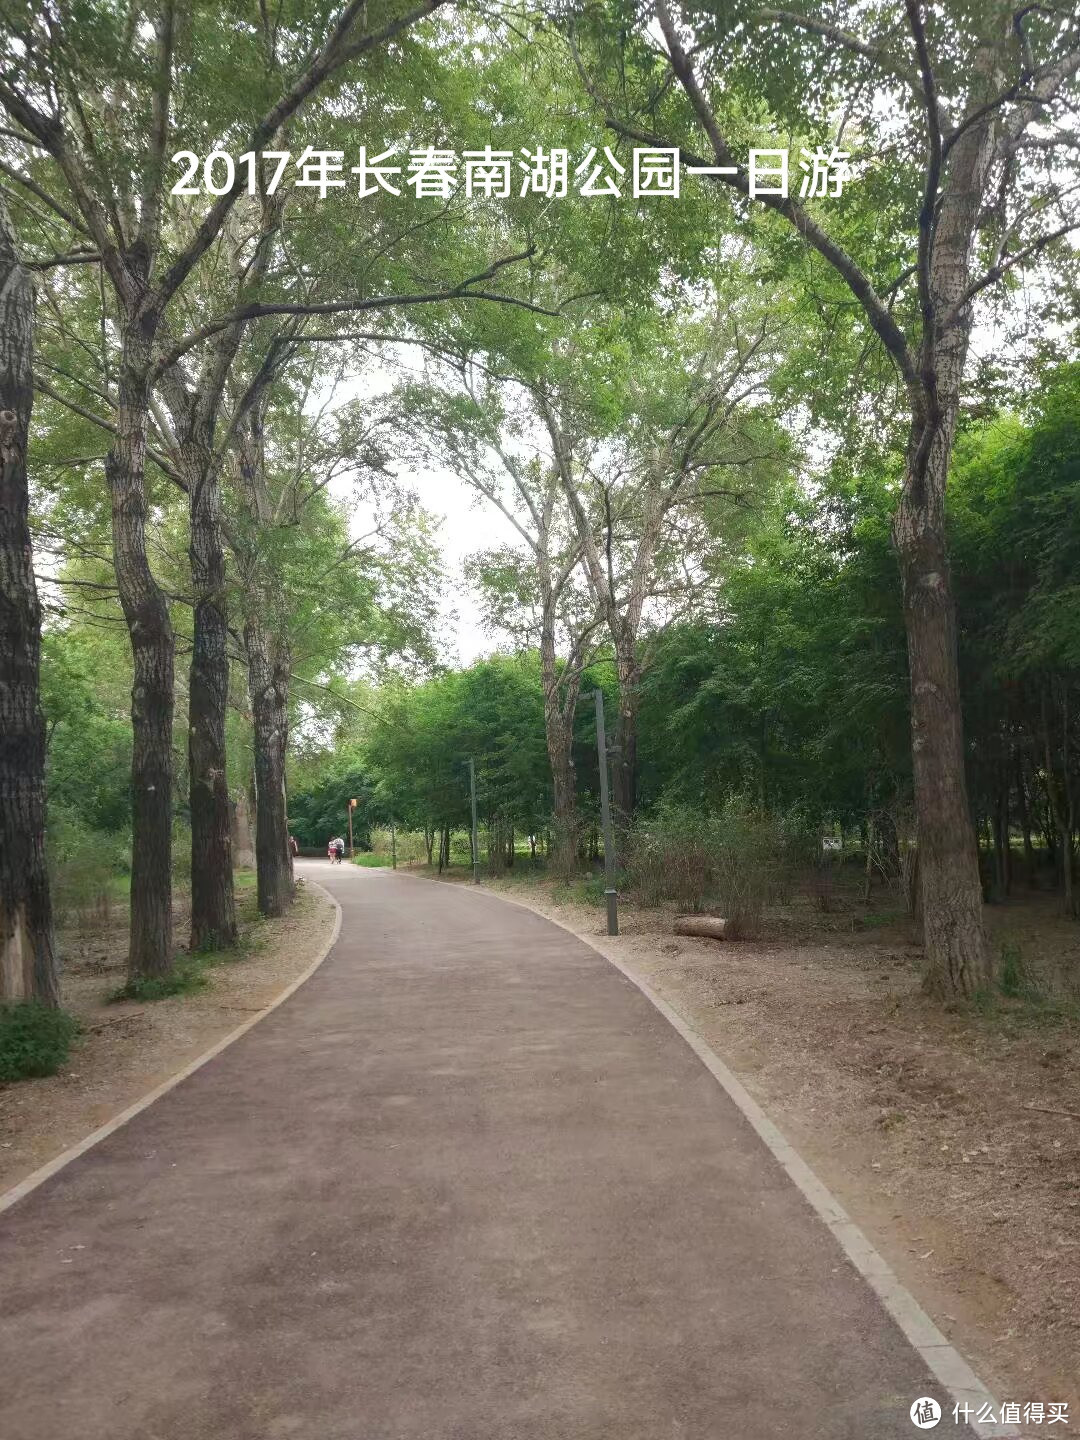 长春南湖公园是以植物景观为主的自然生态公园，集休闲娱乐、体育健身、水体观光和植物观赏等于一体的大型综合性公园、[1]是中国第二大的市内公园。